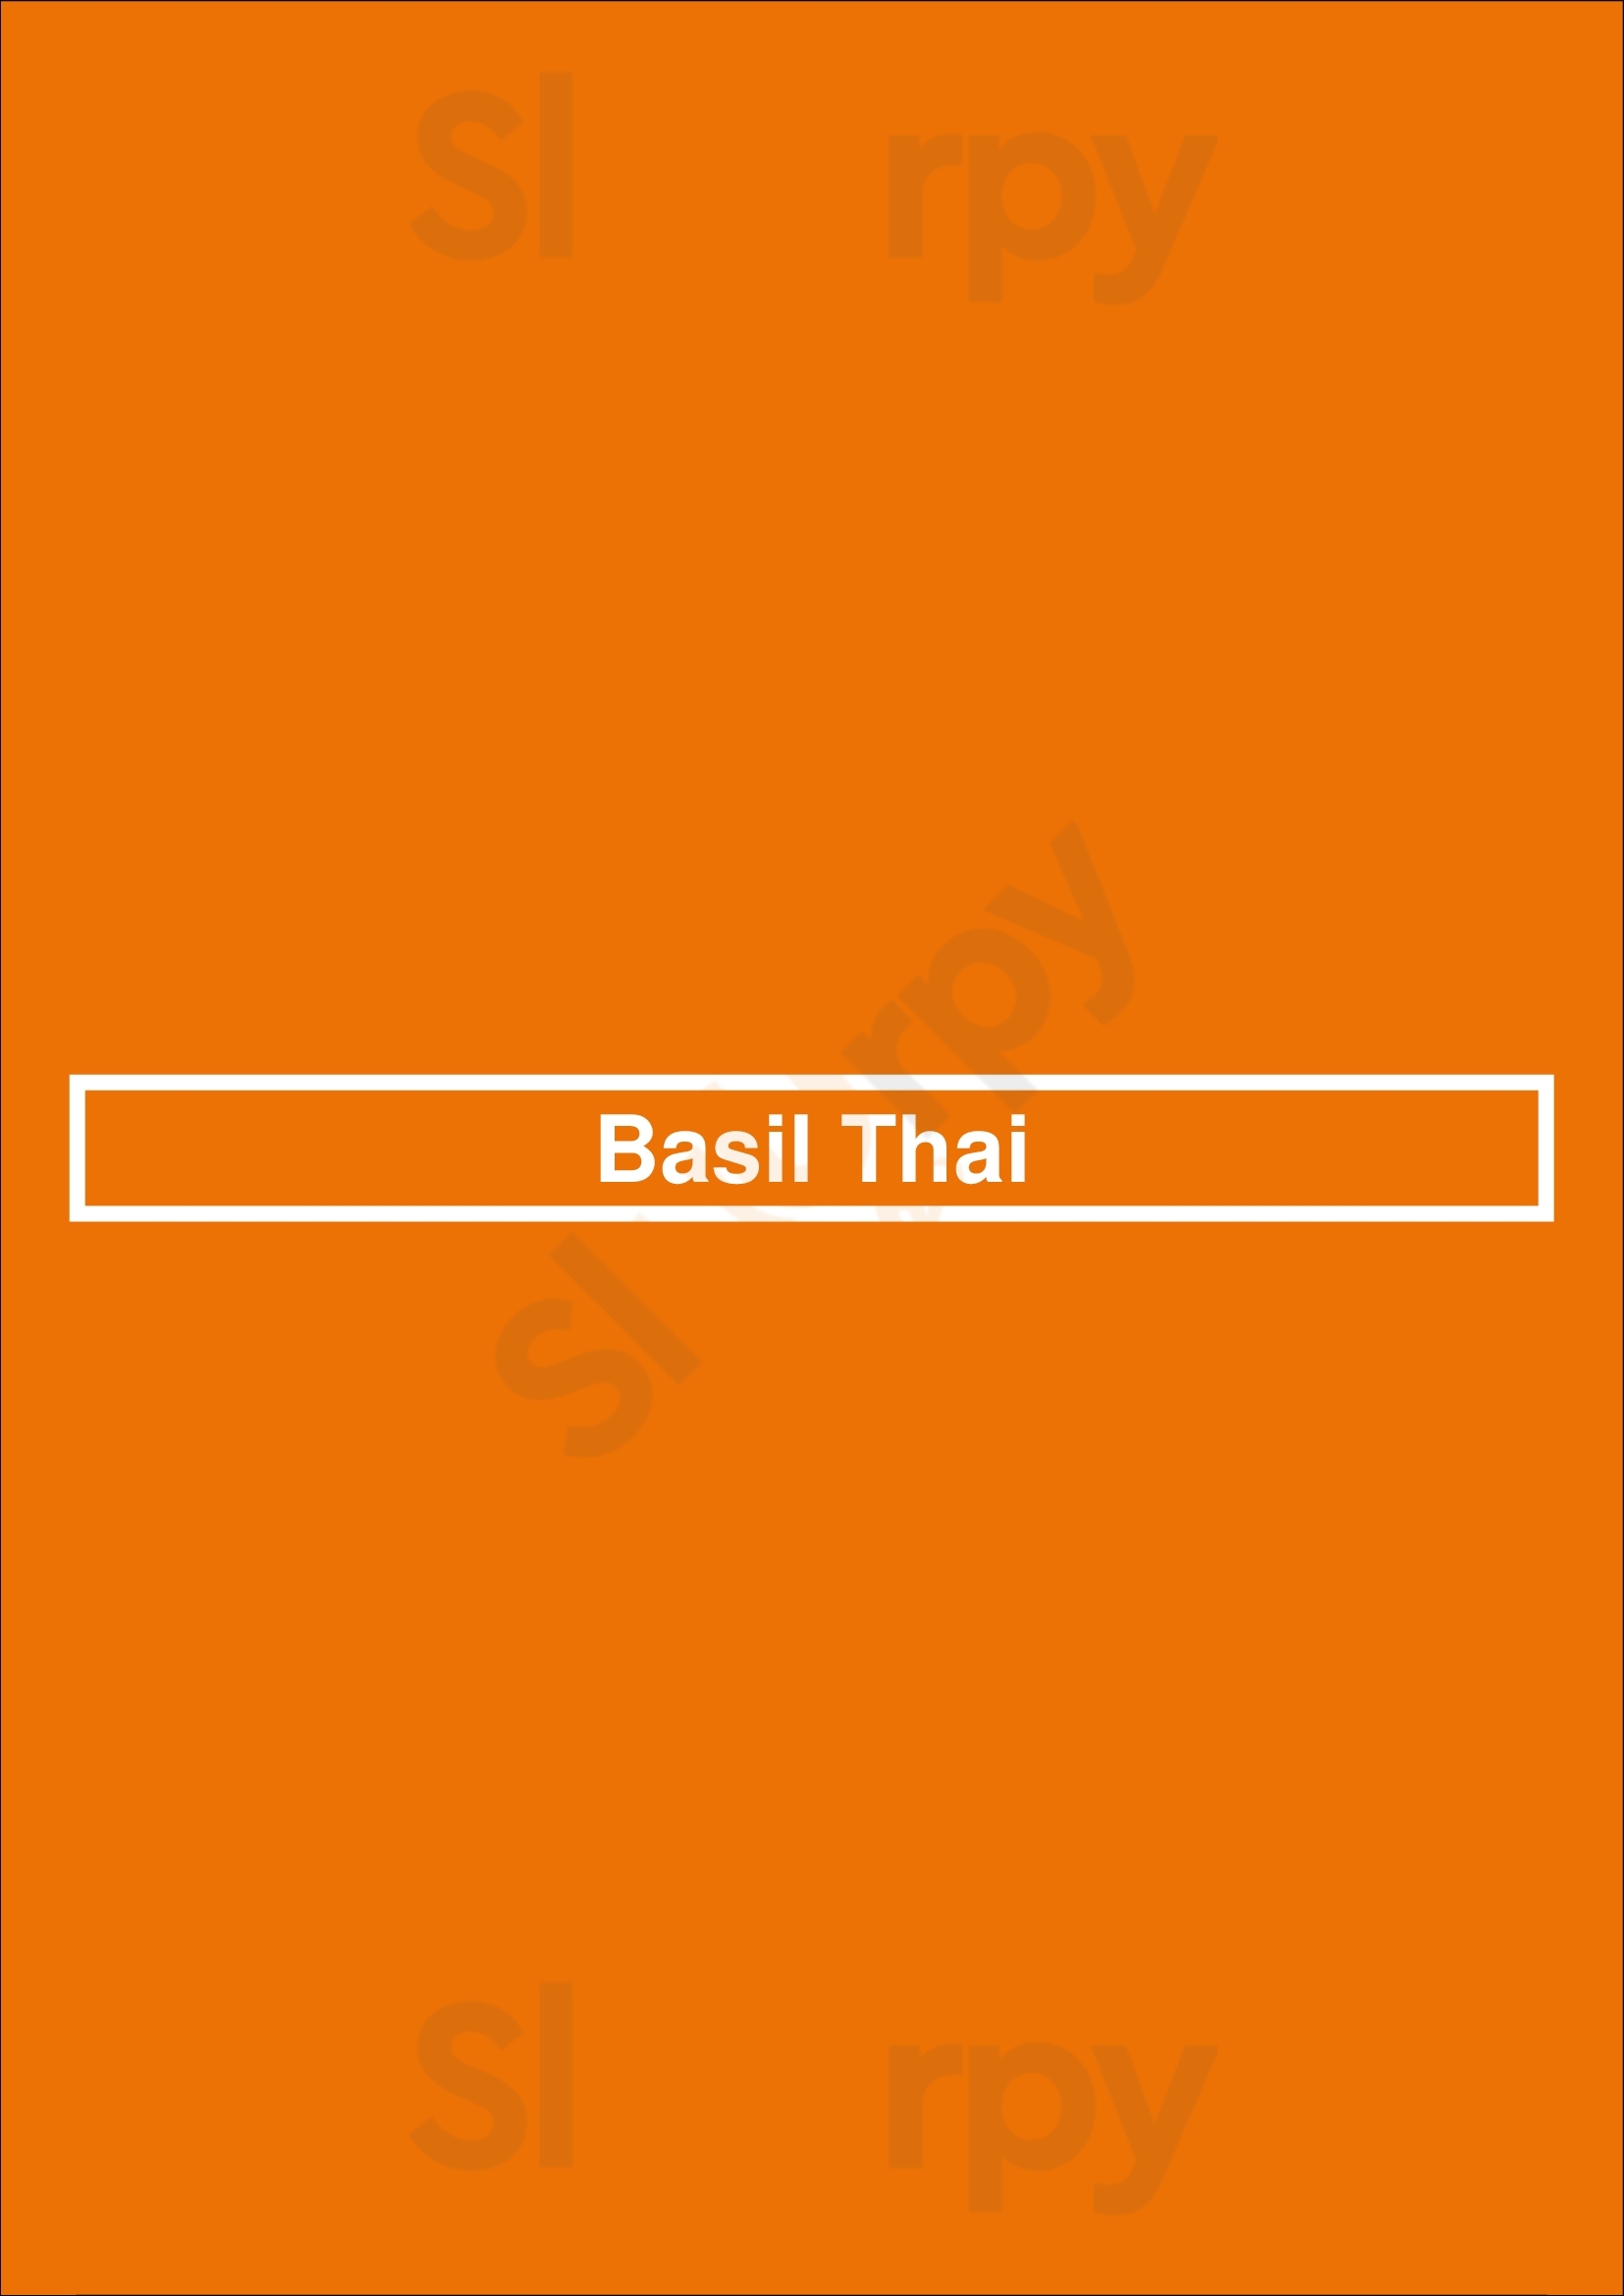 Basil Thai Charlotte Menu - 1